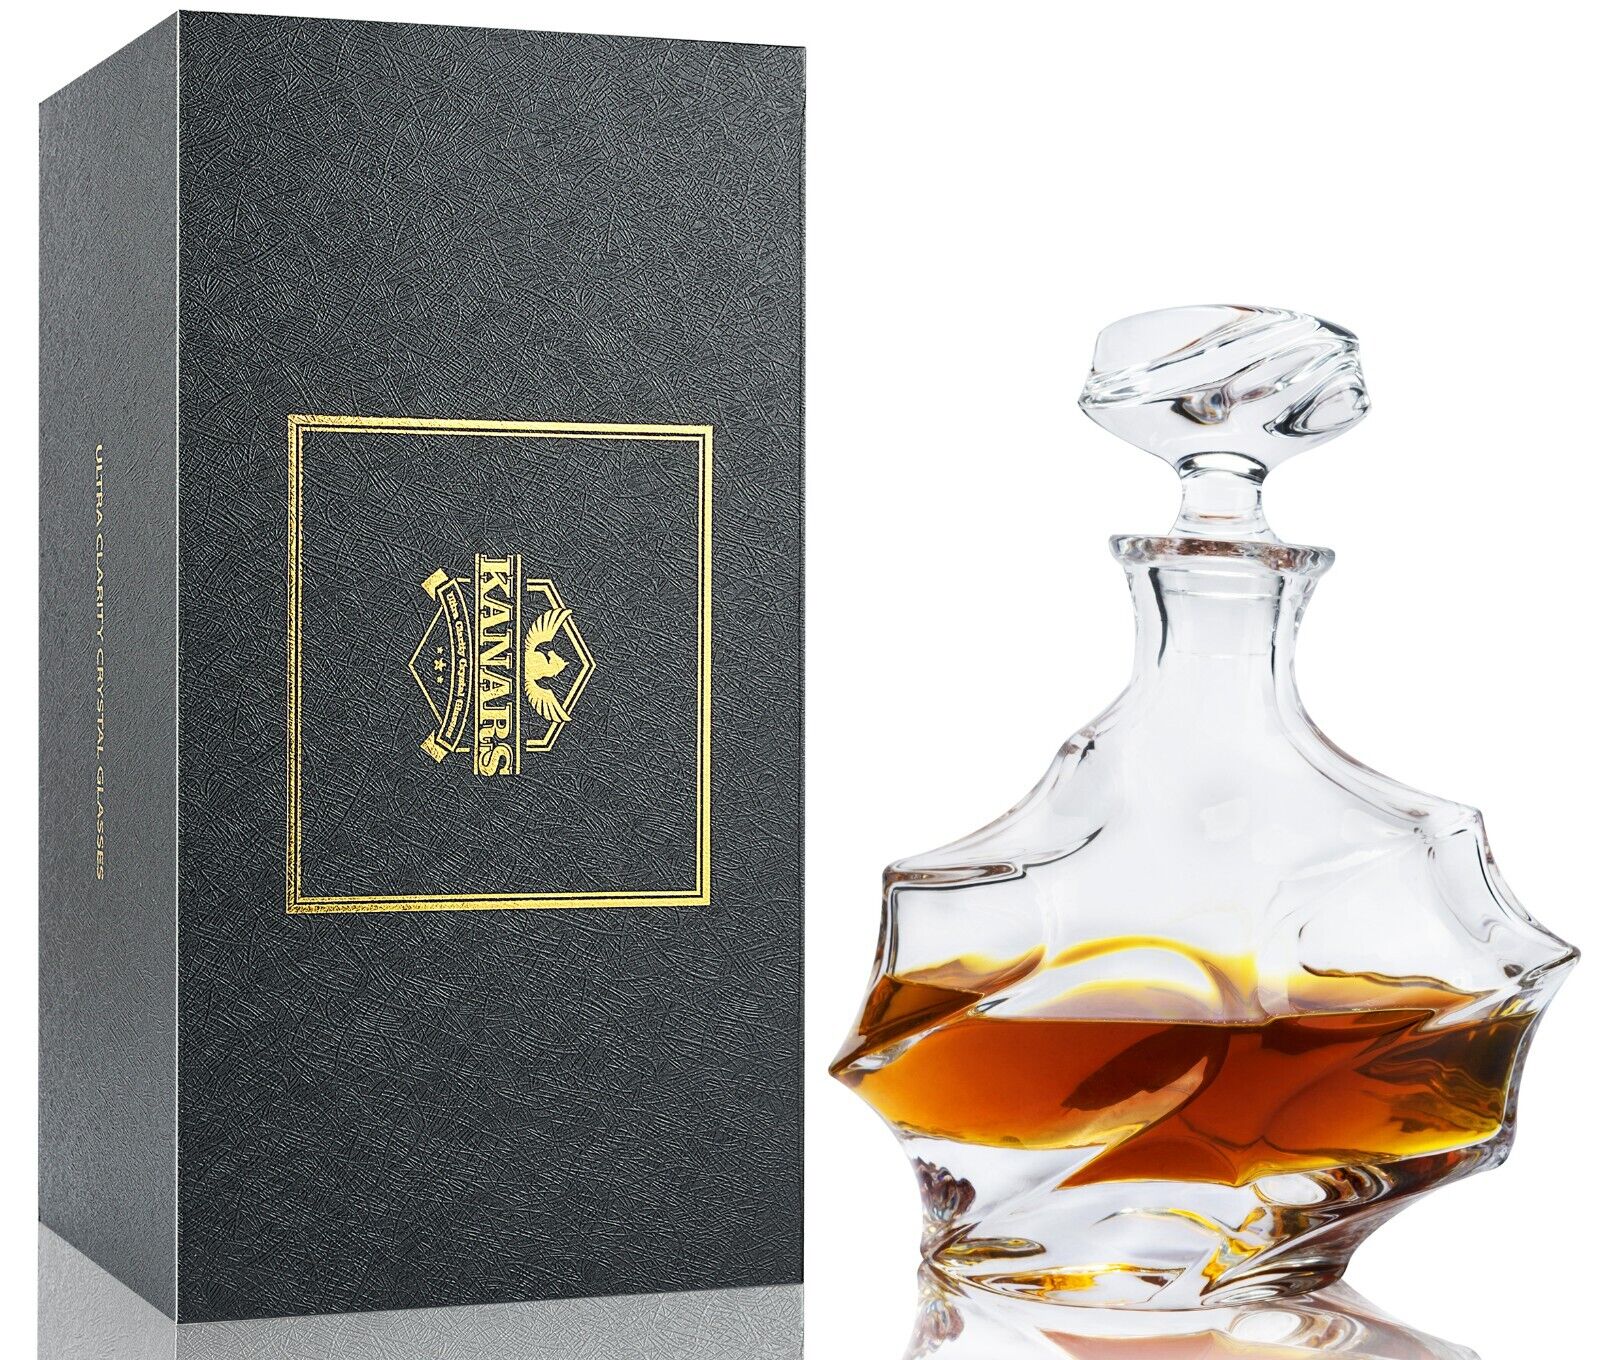 KANARS Whiskey Decanter with Airtight Stopper for Bourbon Scotch Liquor Home Bar